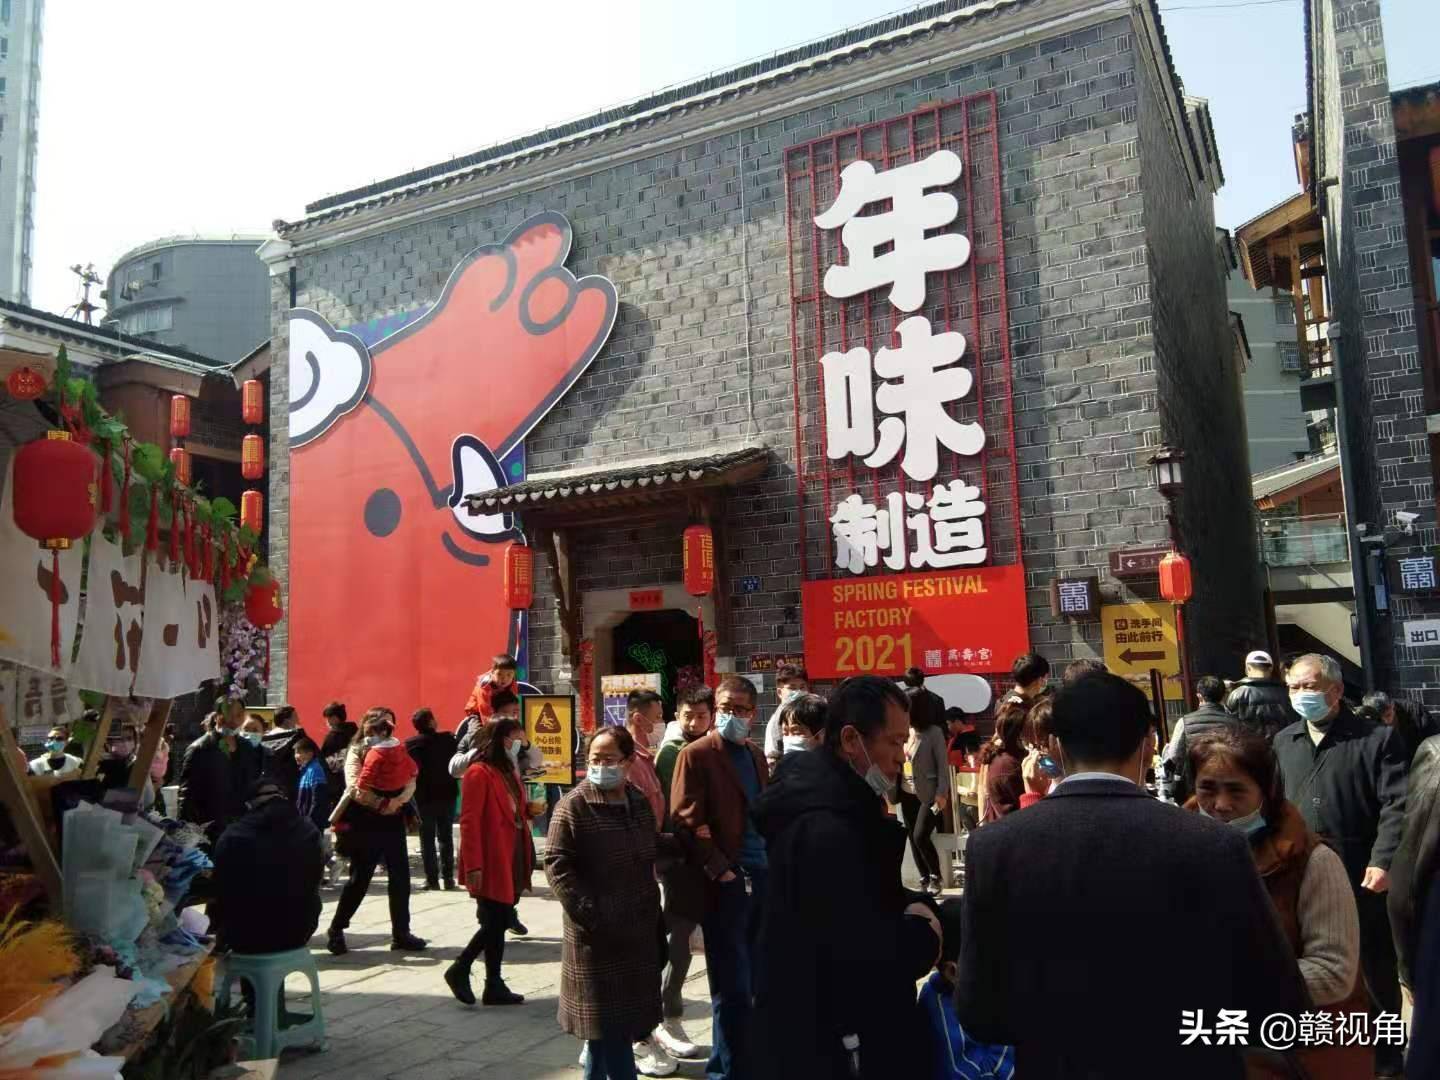 就地过年也精彩－江西春节假期接待游客2539.06万人次